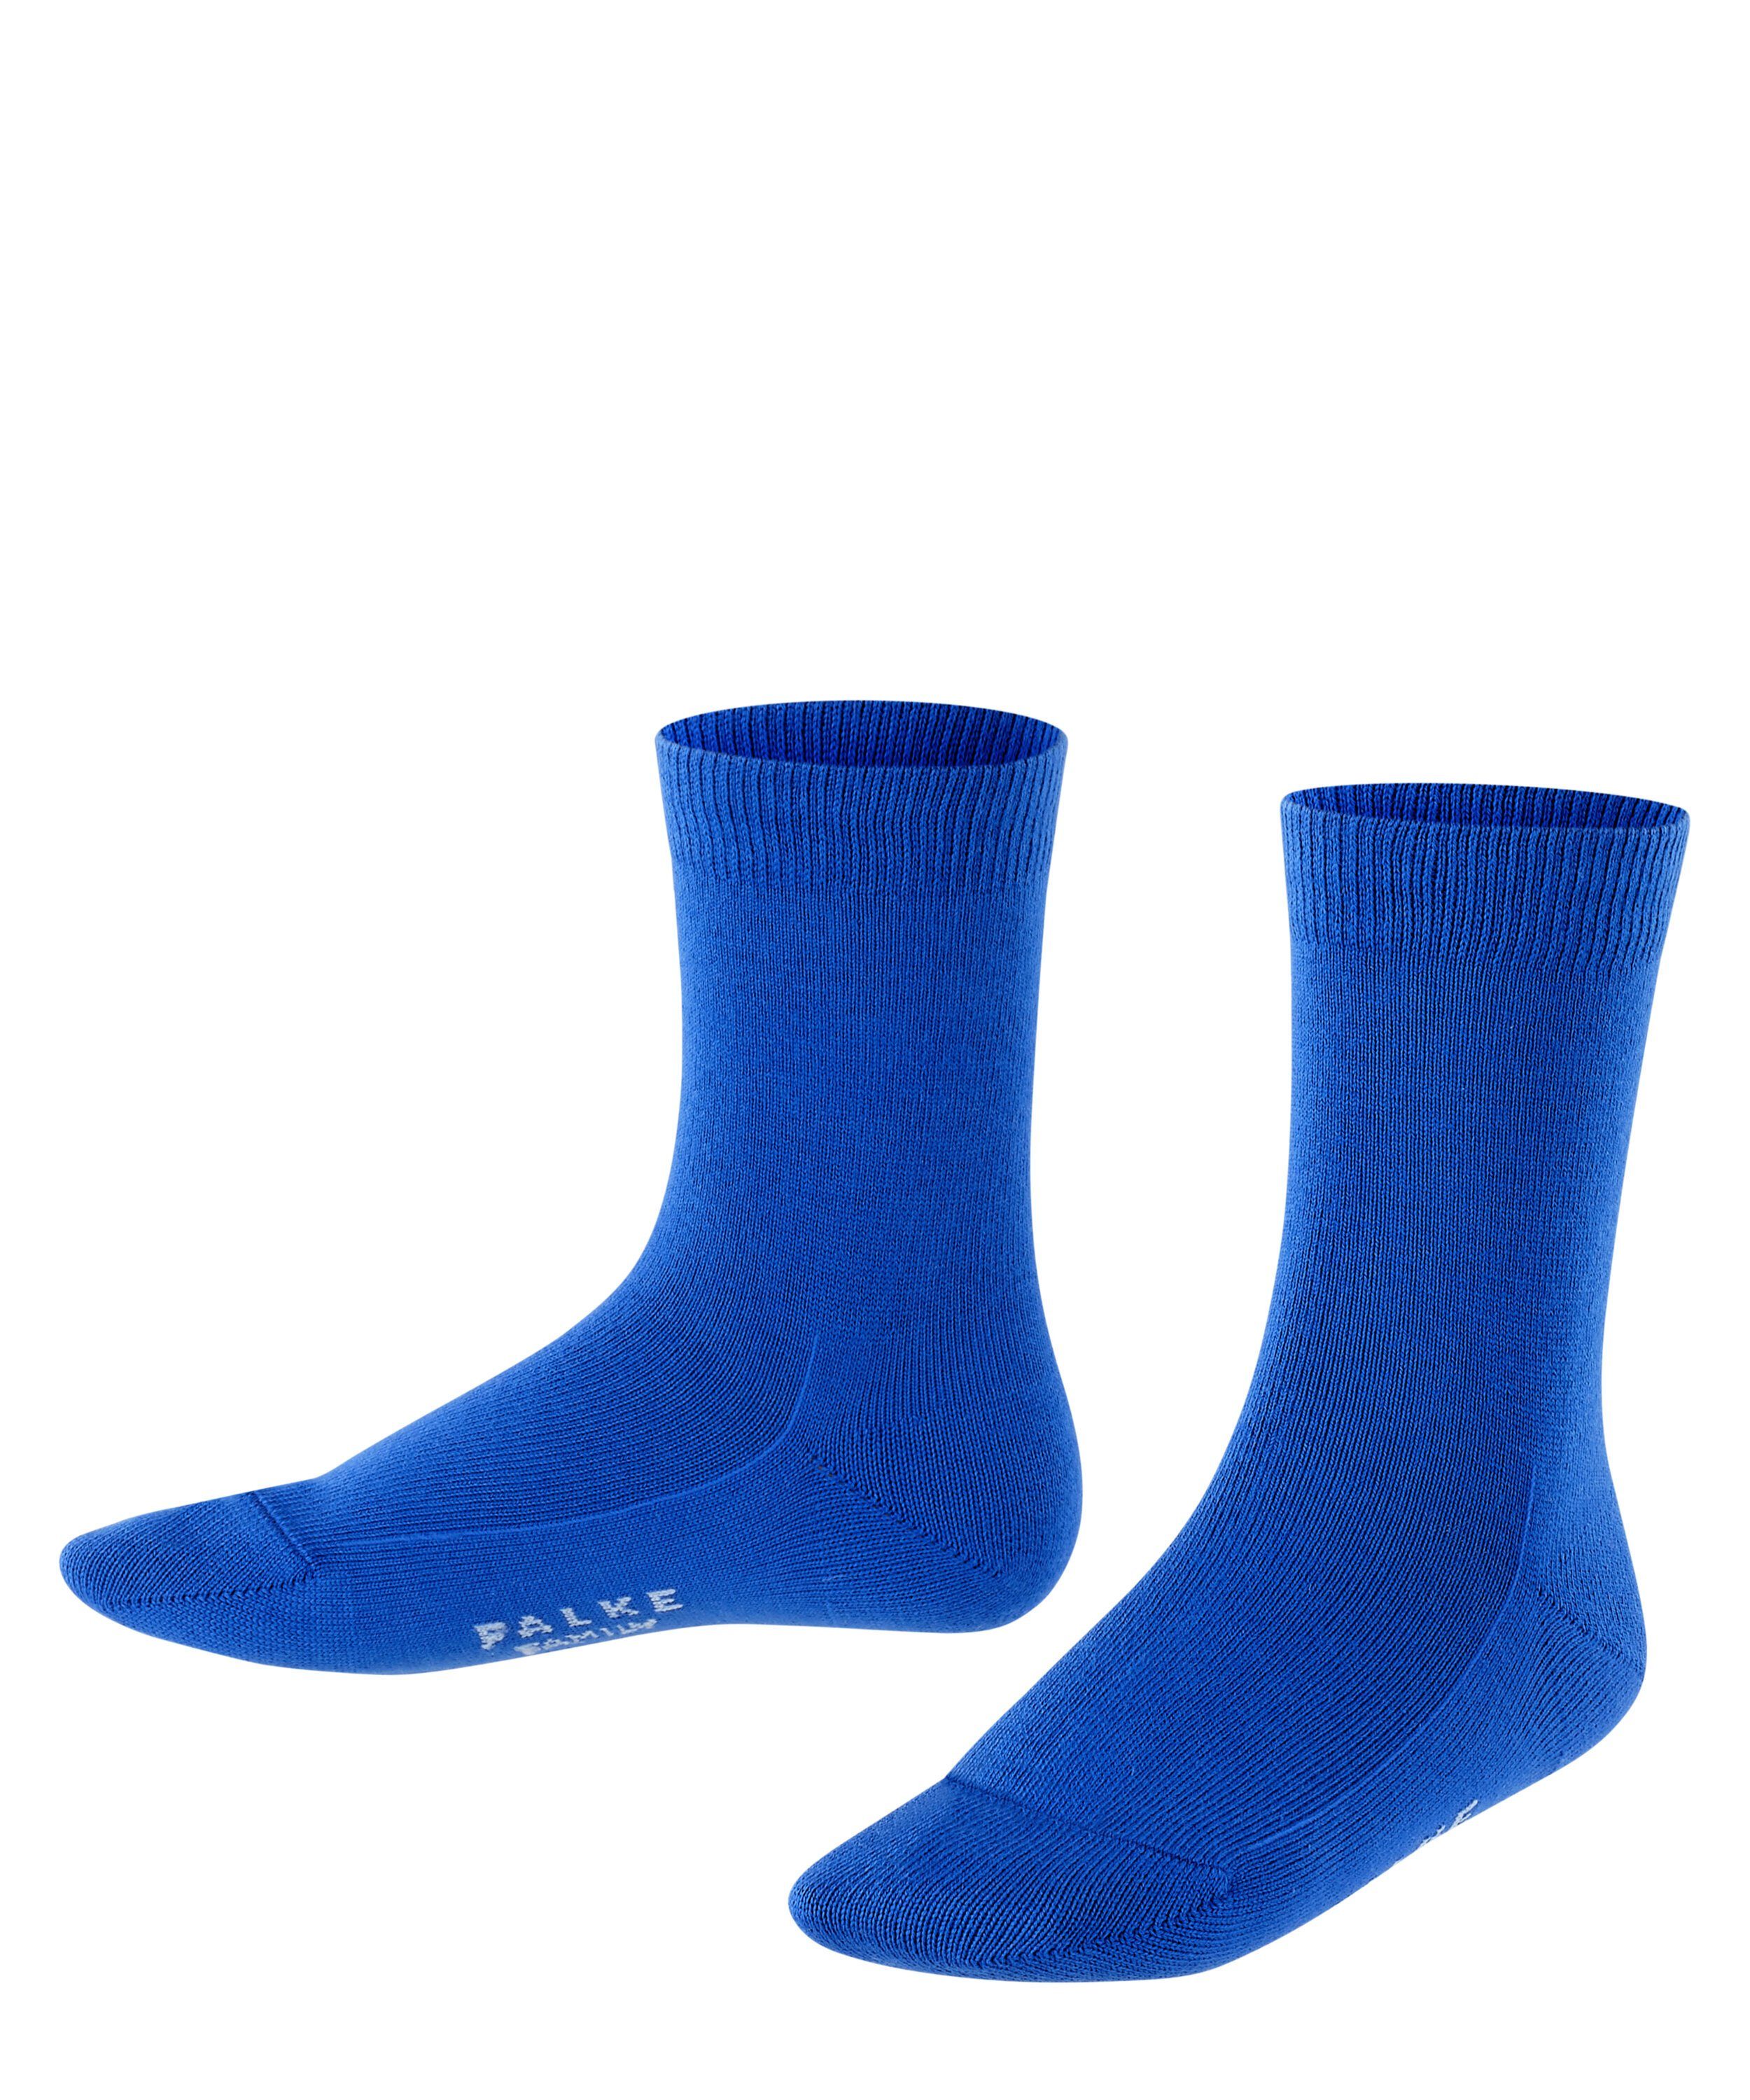 blue FALKE Socken (6054) Family cobalt (1-Paar)